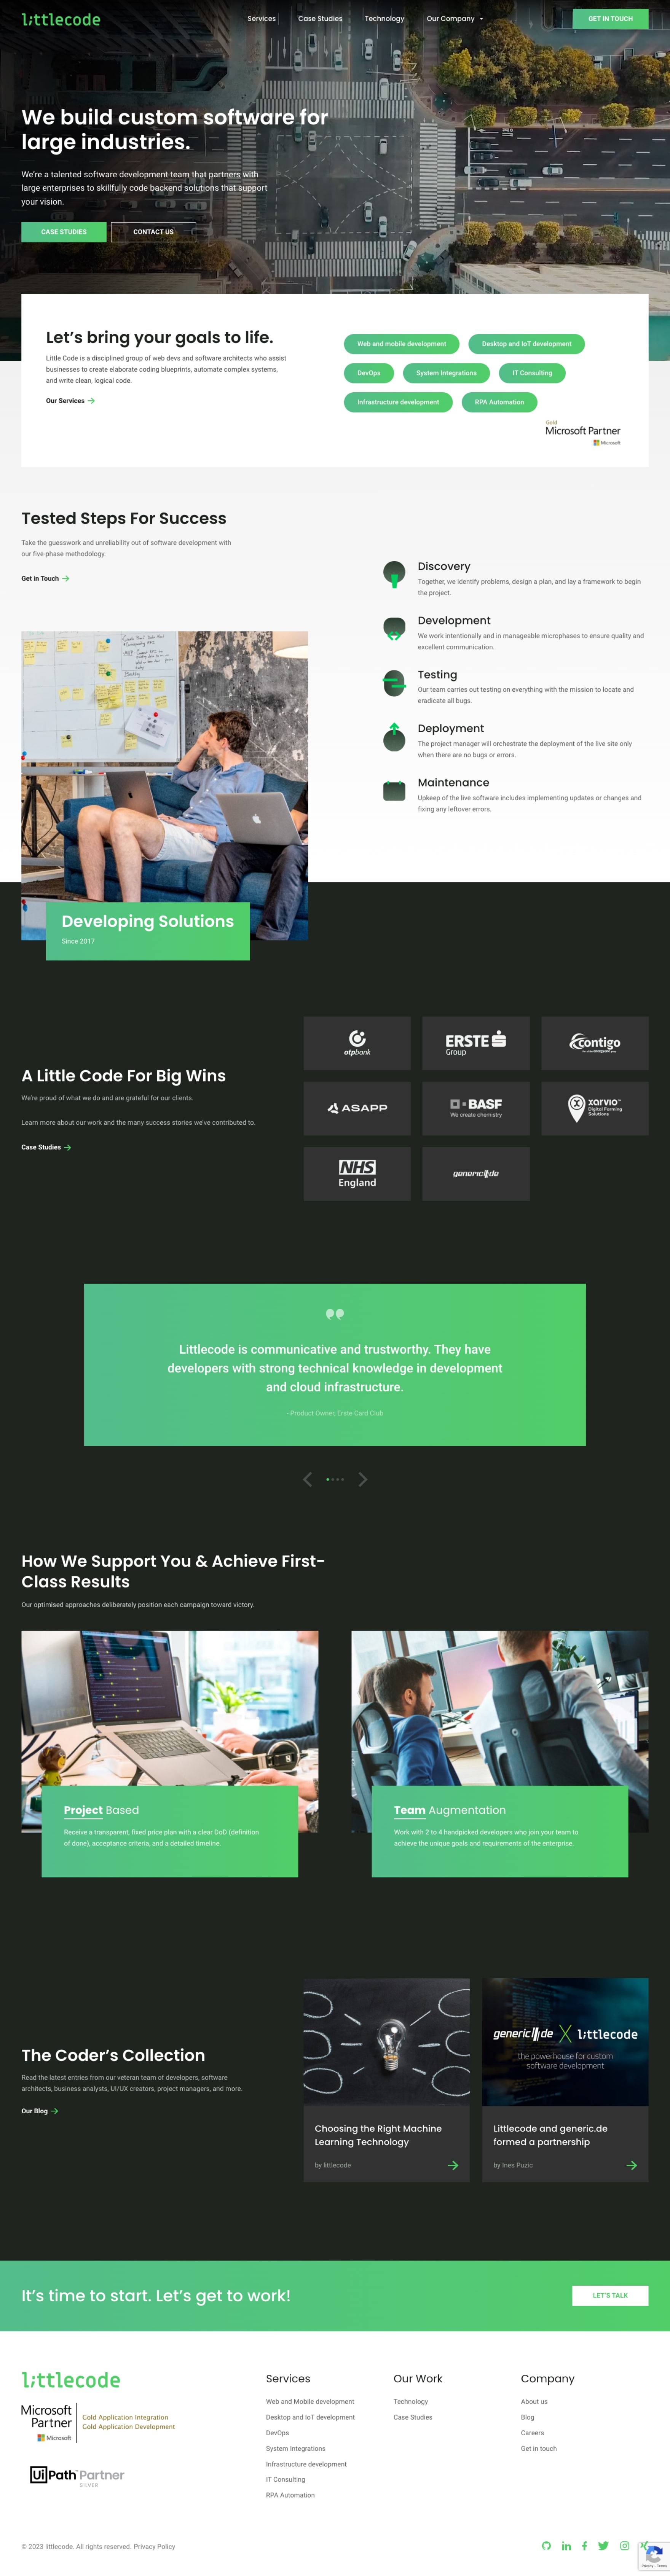 littlecode website design